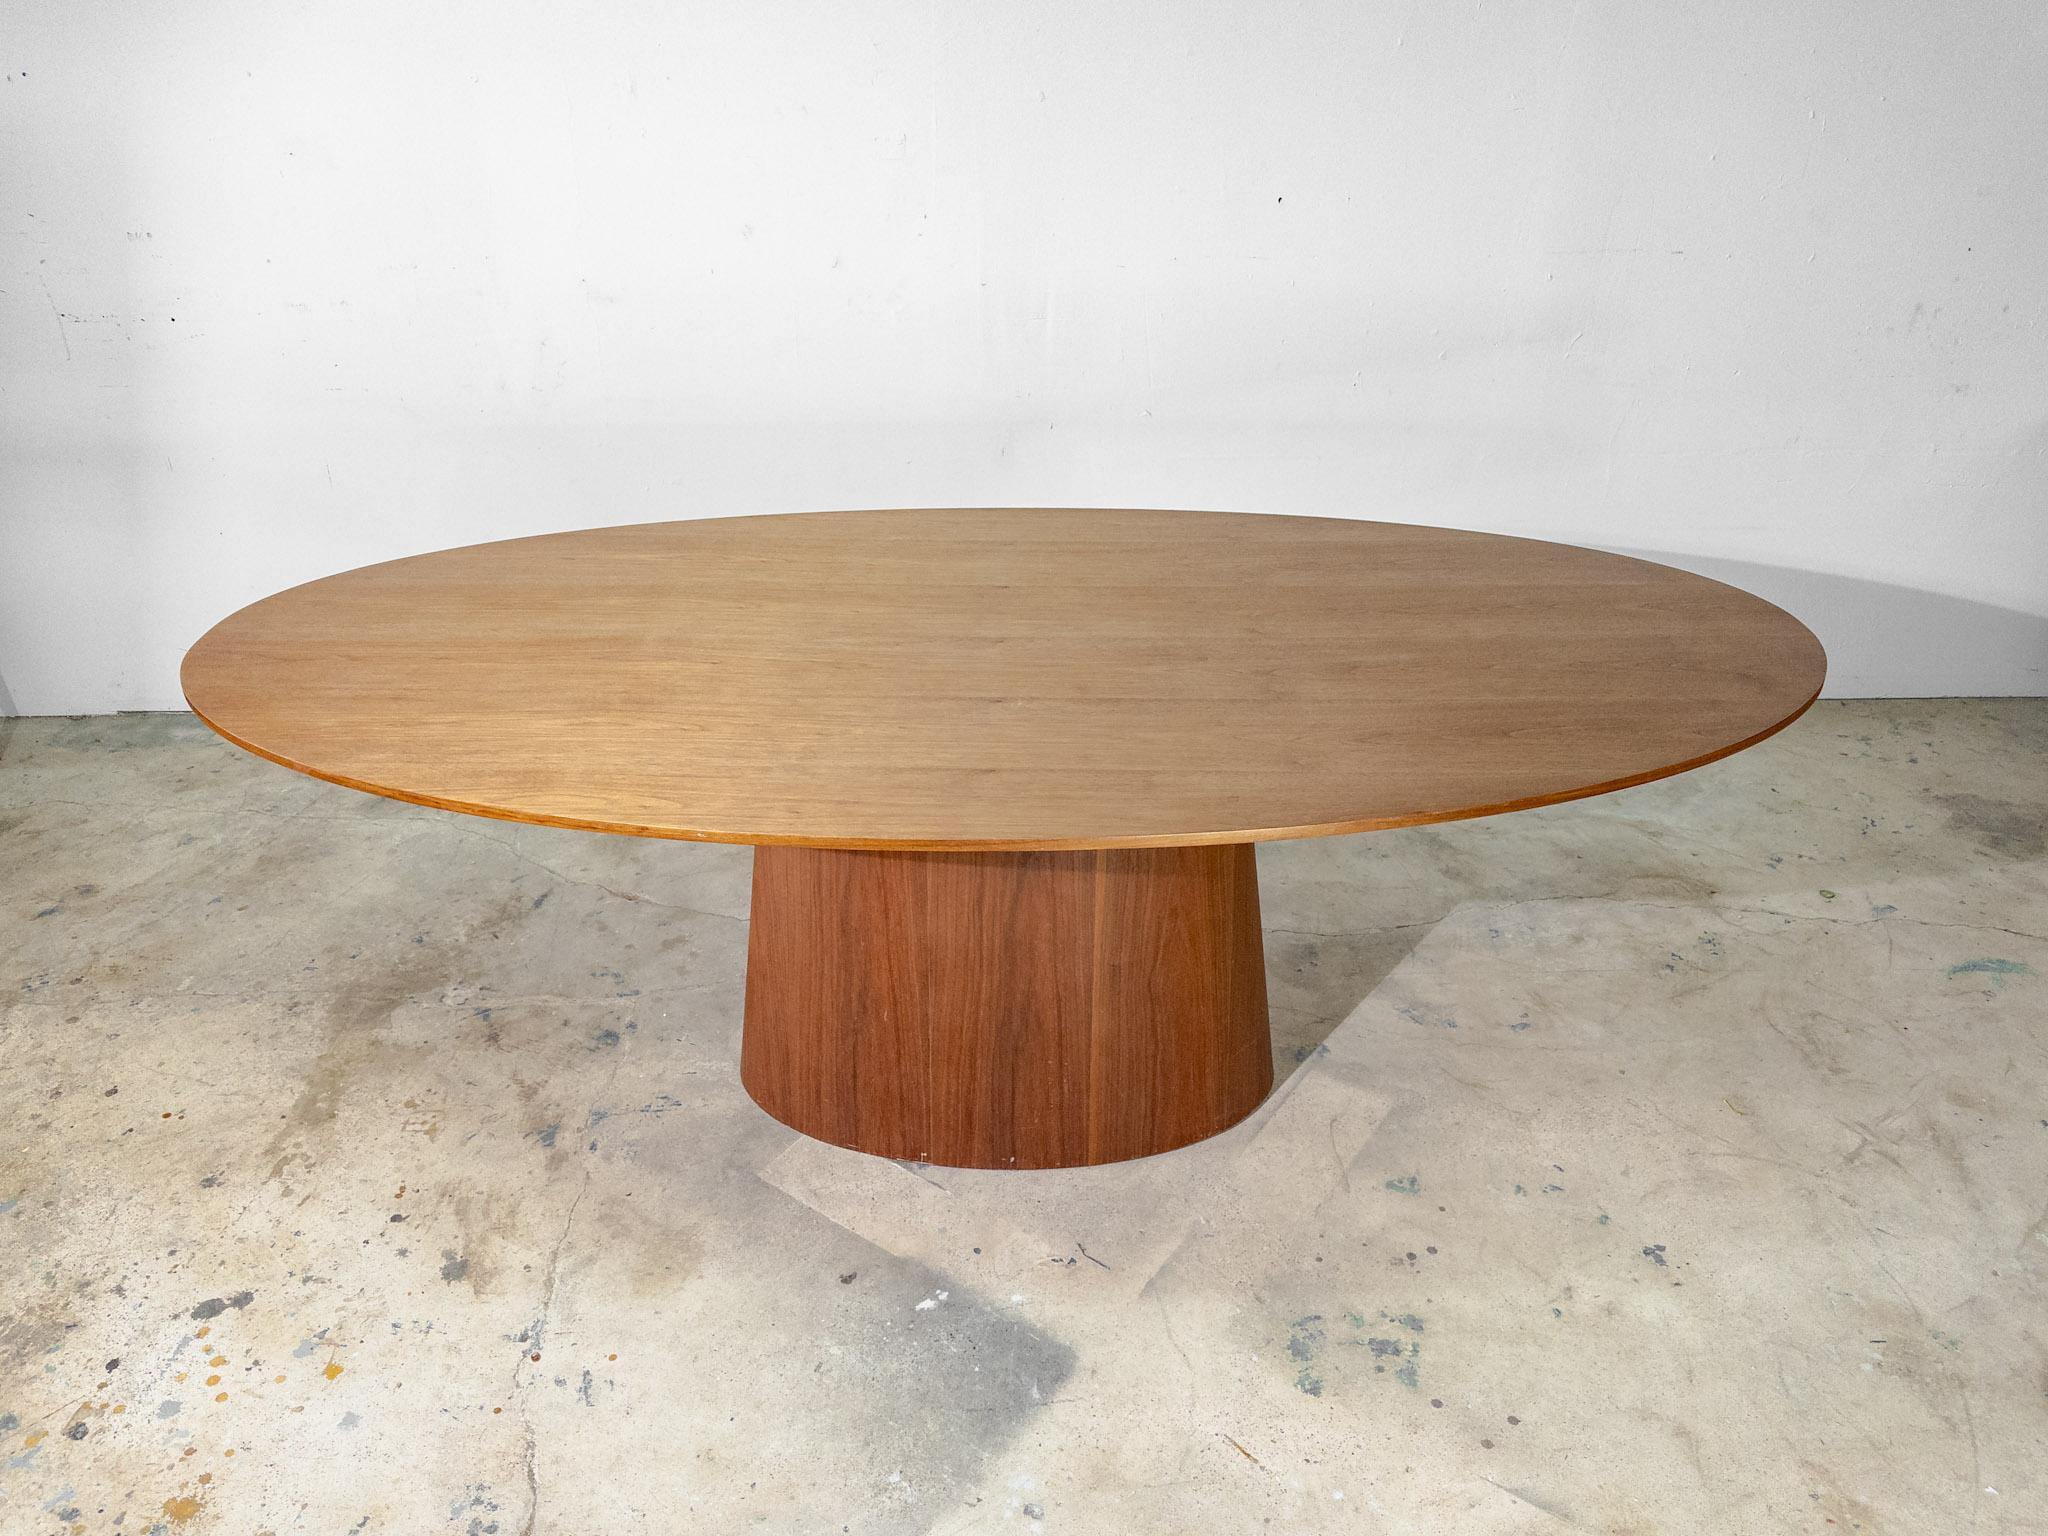 Fabriquée avec une précision exquise, la table de salle à manger ovale Angel Cerda 1013 de la collection Nature Life incarne la sophistication. Sa silhouette épurée est ornée d'un placage de noyer lustré, dégageant chaleur et élégance. La forme